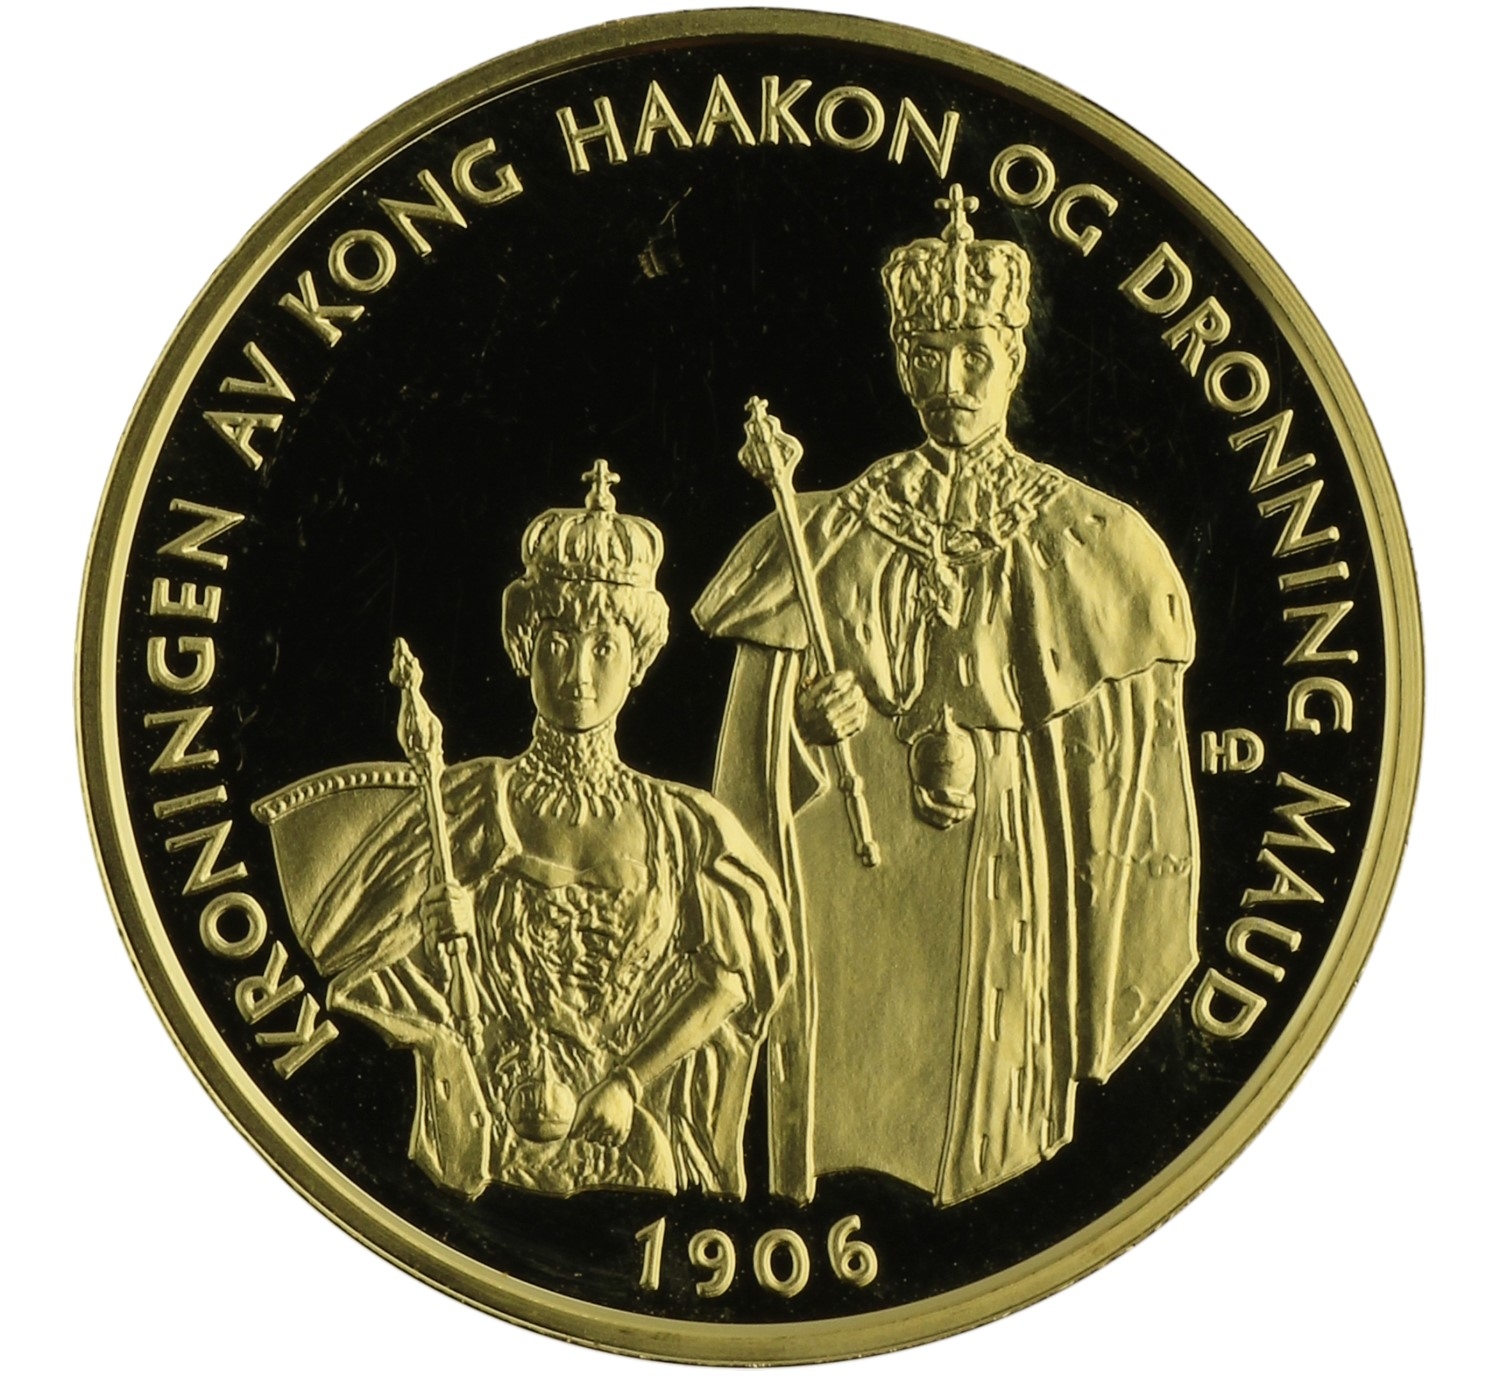 Medal (King Haakon & Queen Maud) - Norway - c. 1998